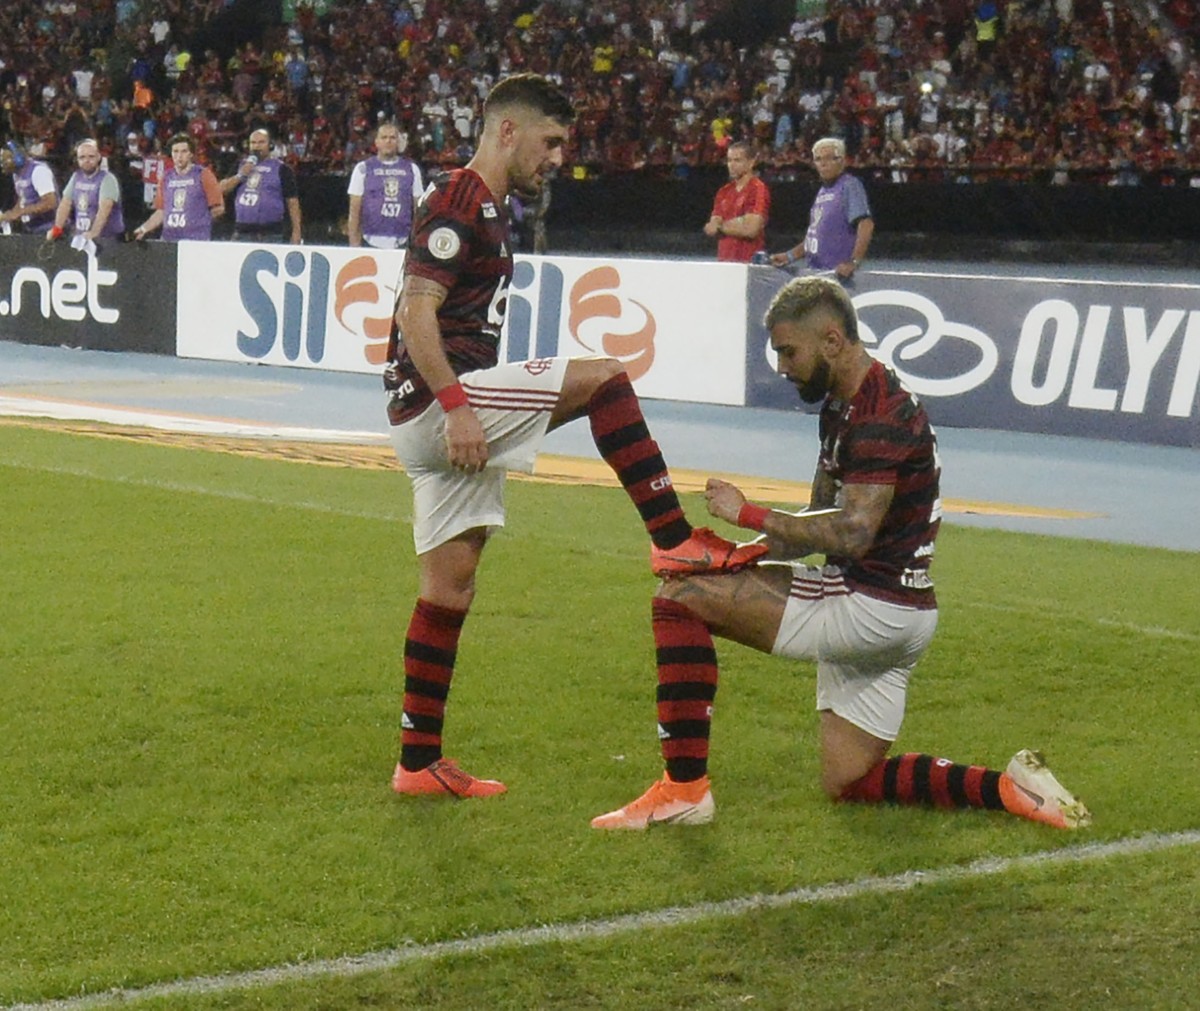 Flamengo aposta em resultados e 'leveza' de Mário Jorge para jogo contra o  Corinthians